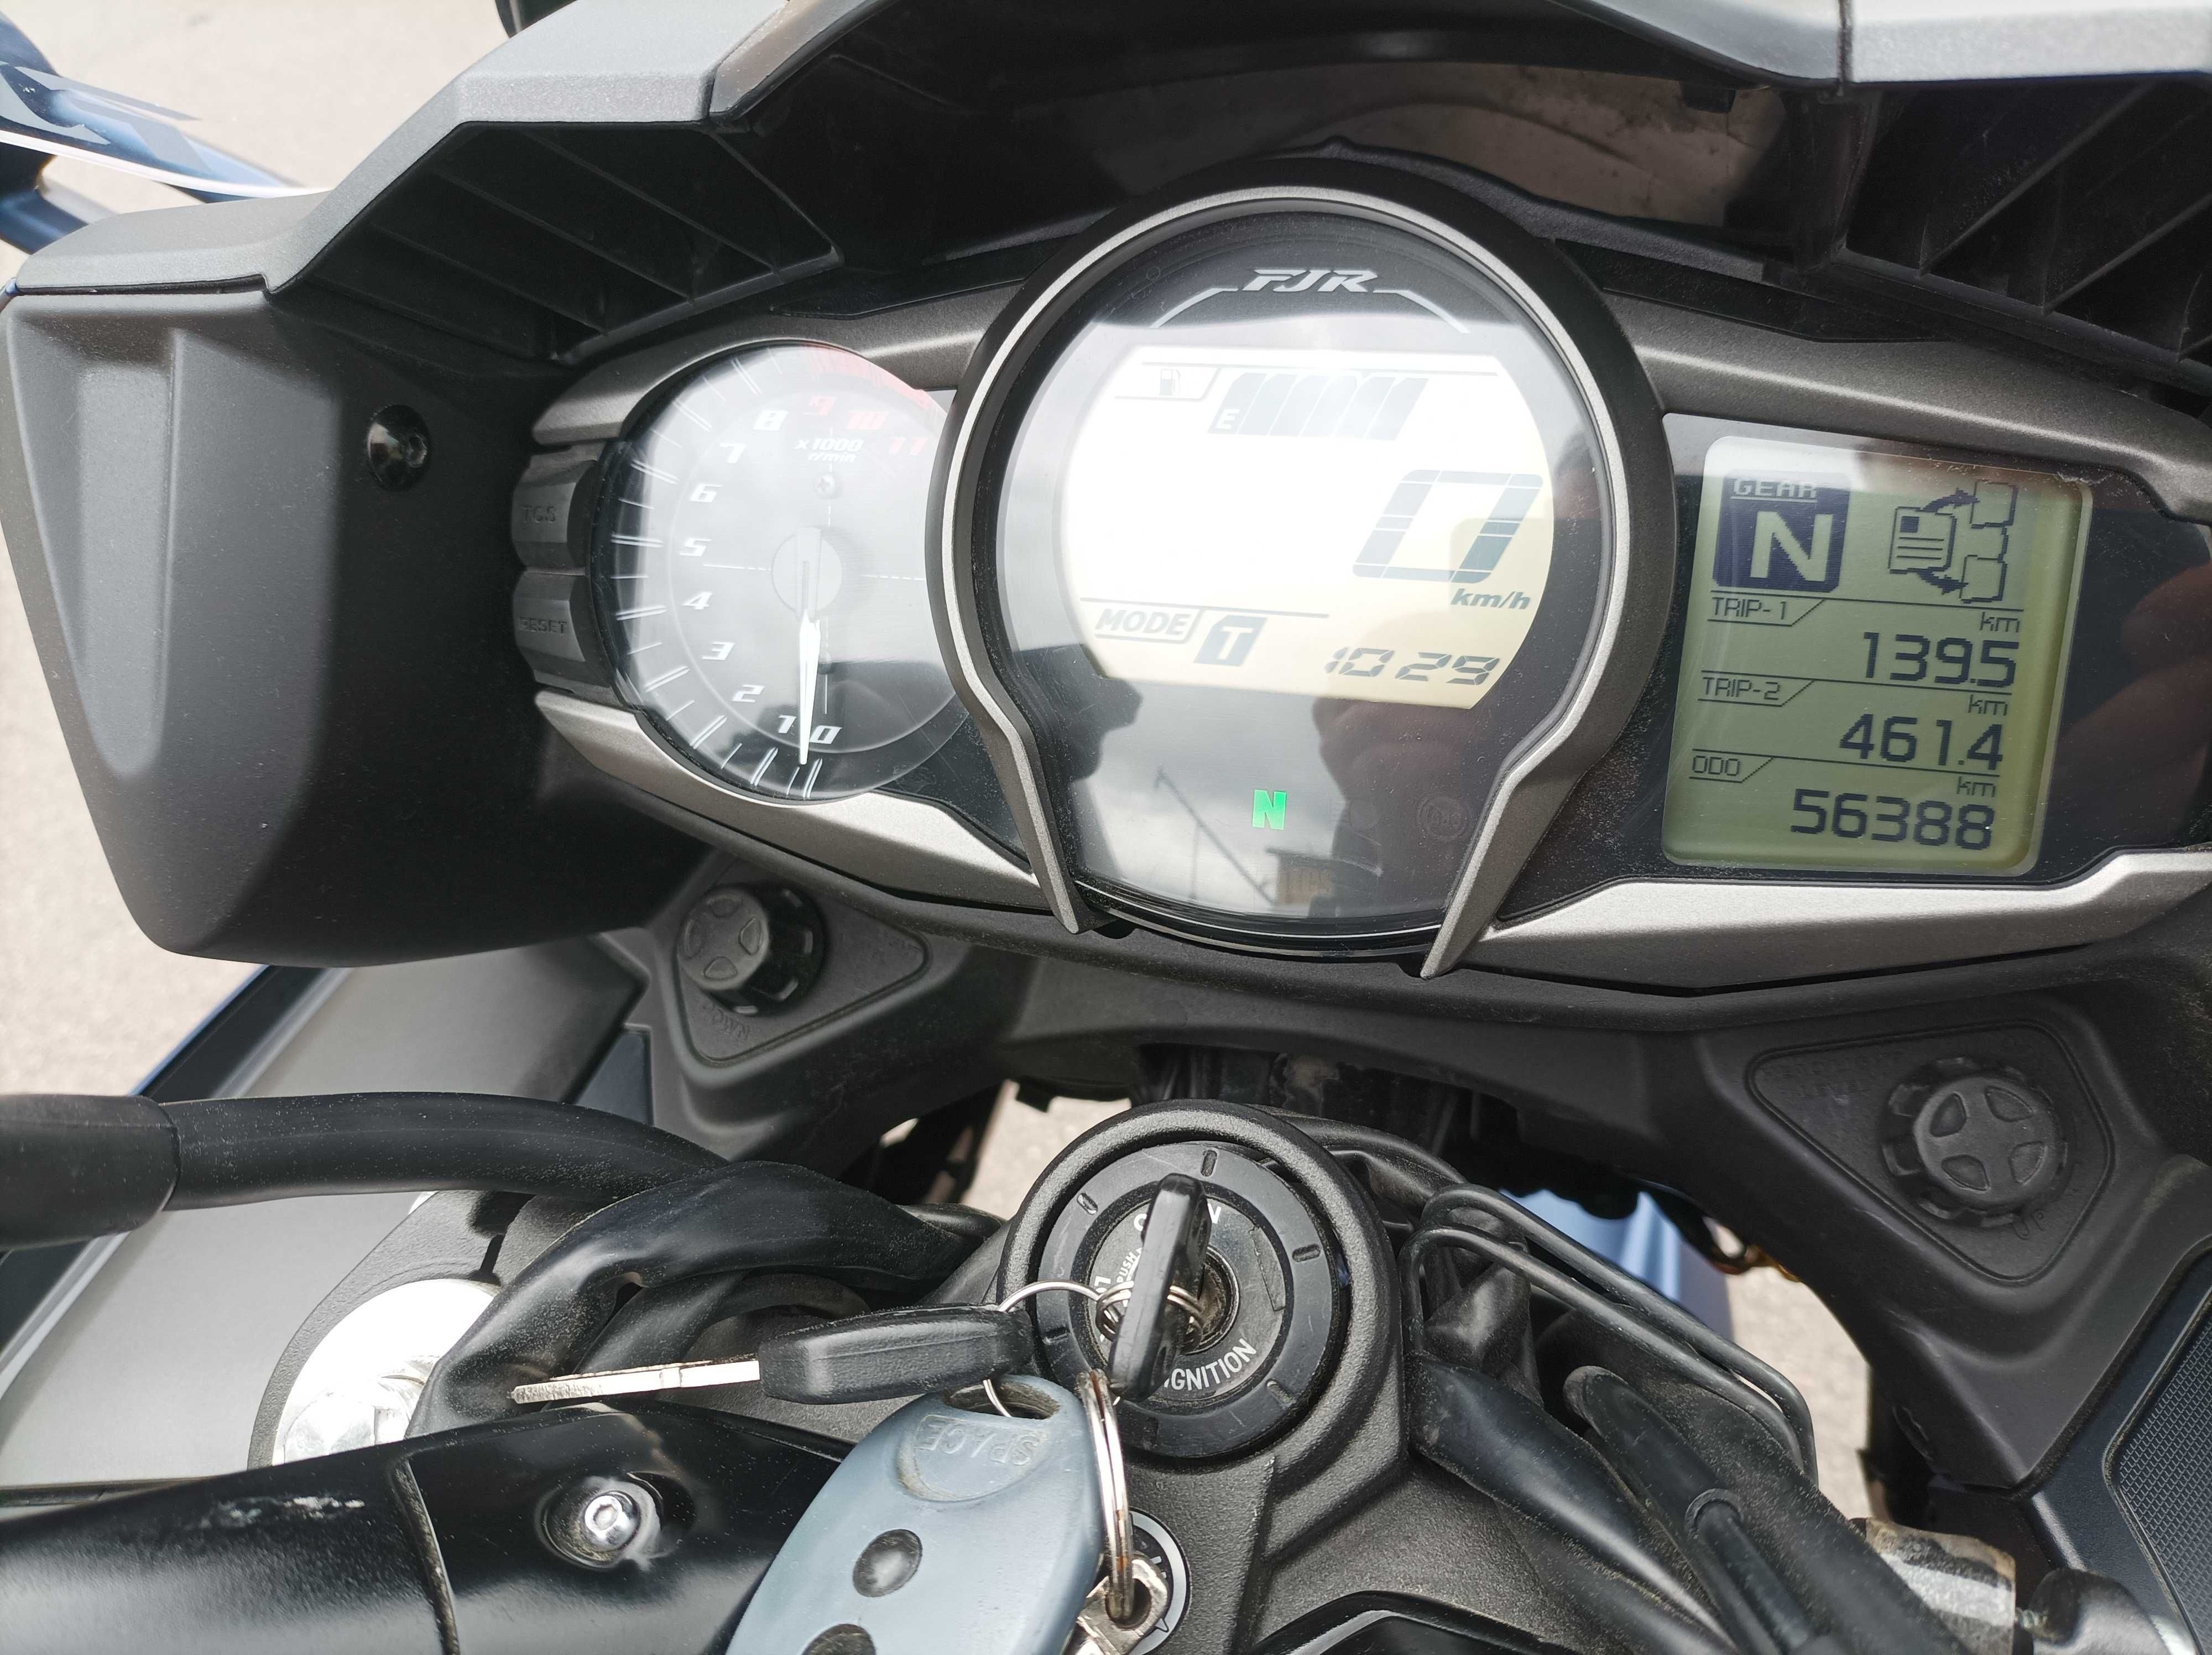 Yamaha FJR1300 A rok 2018 ABS LED